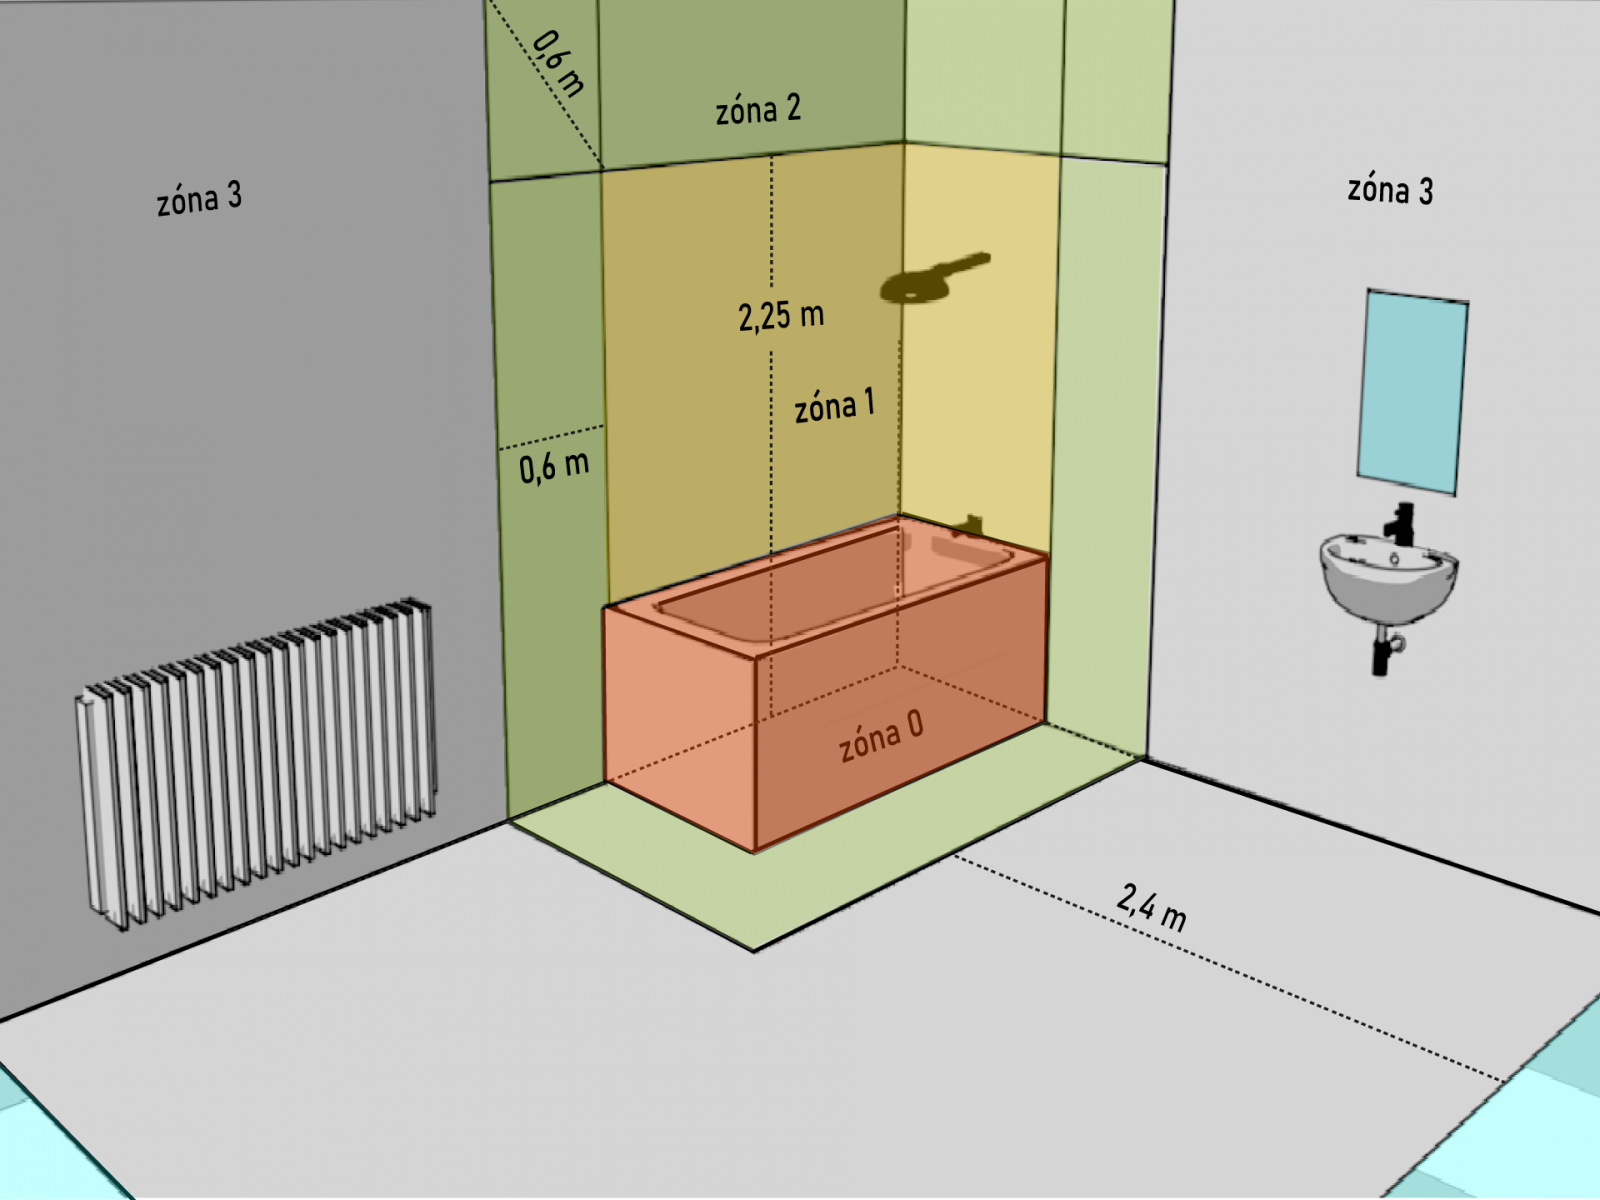 Nákres zobrazující koupelnu a v ní vyznačené 4 zóny pro elektroinstalace